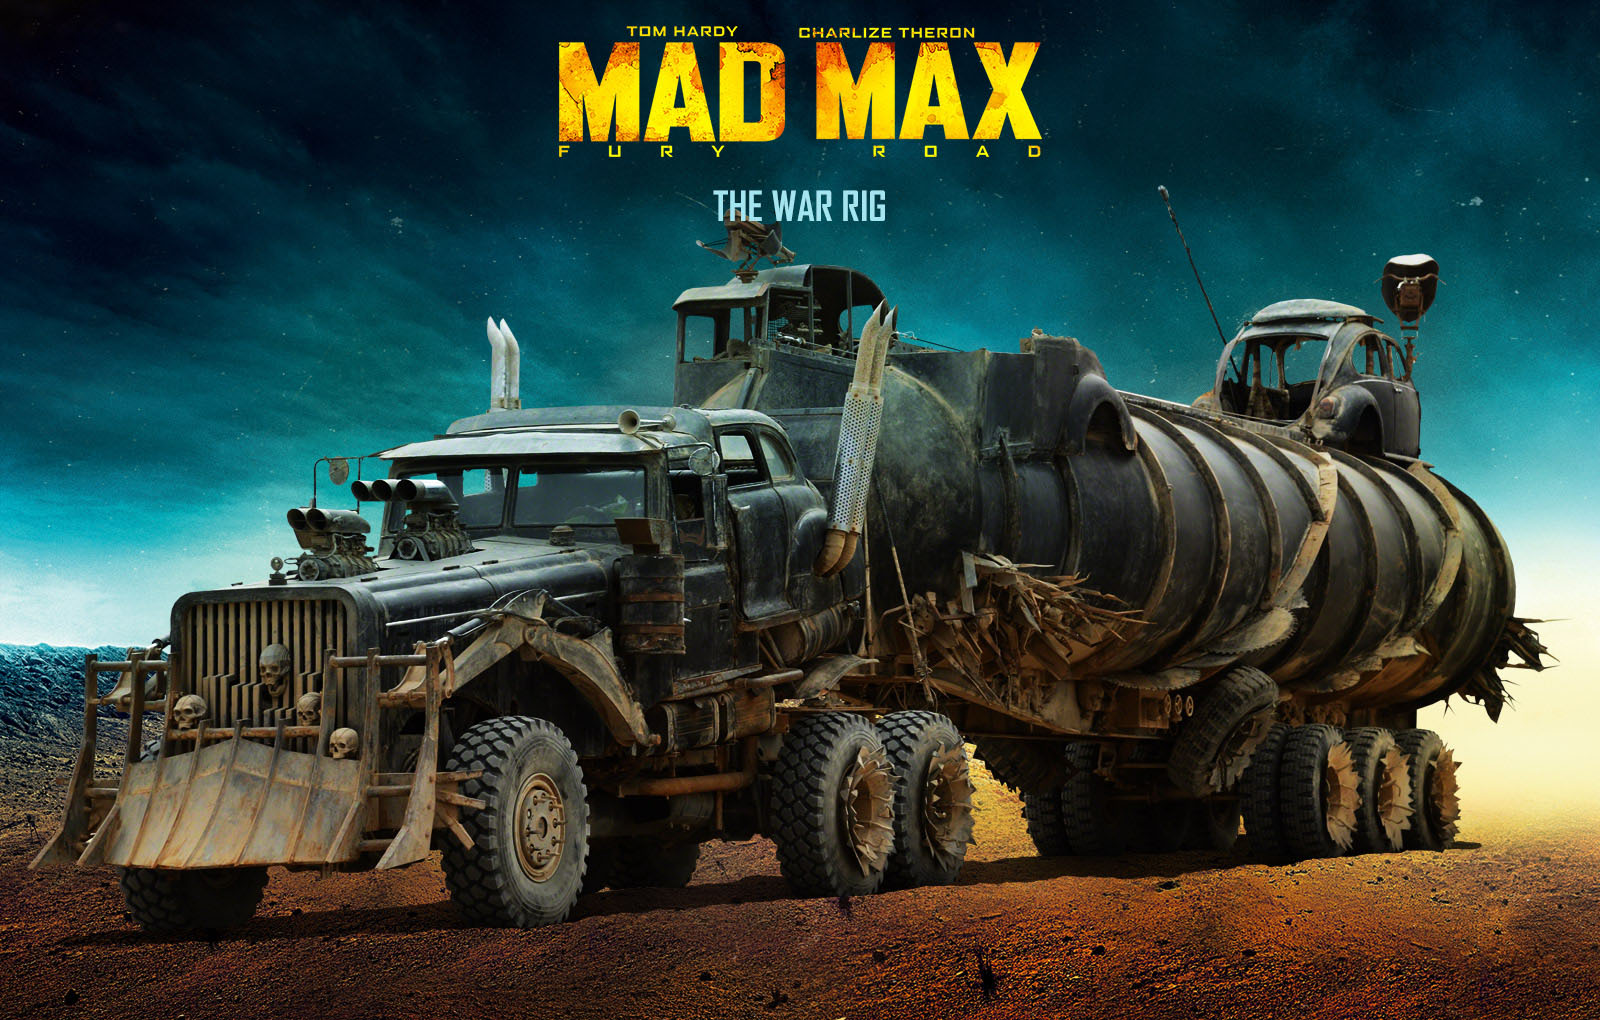 Mad Max #3